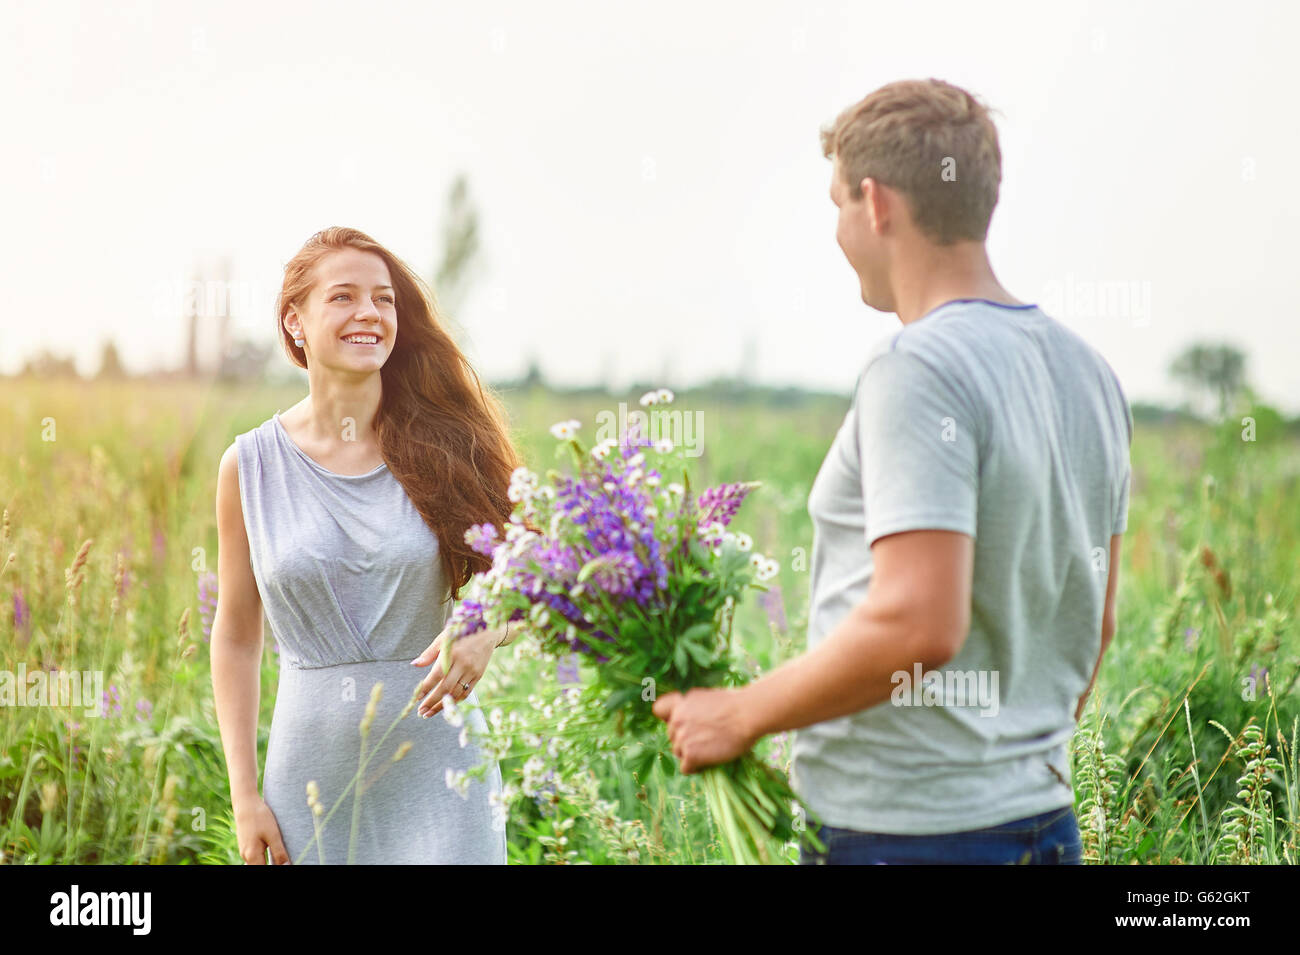 glückliches Paar spielen mit einander in einem Feld Bouquet von Lupinen Stockfoto